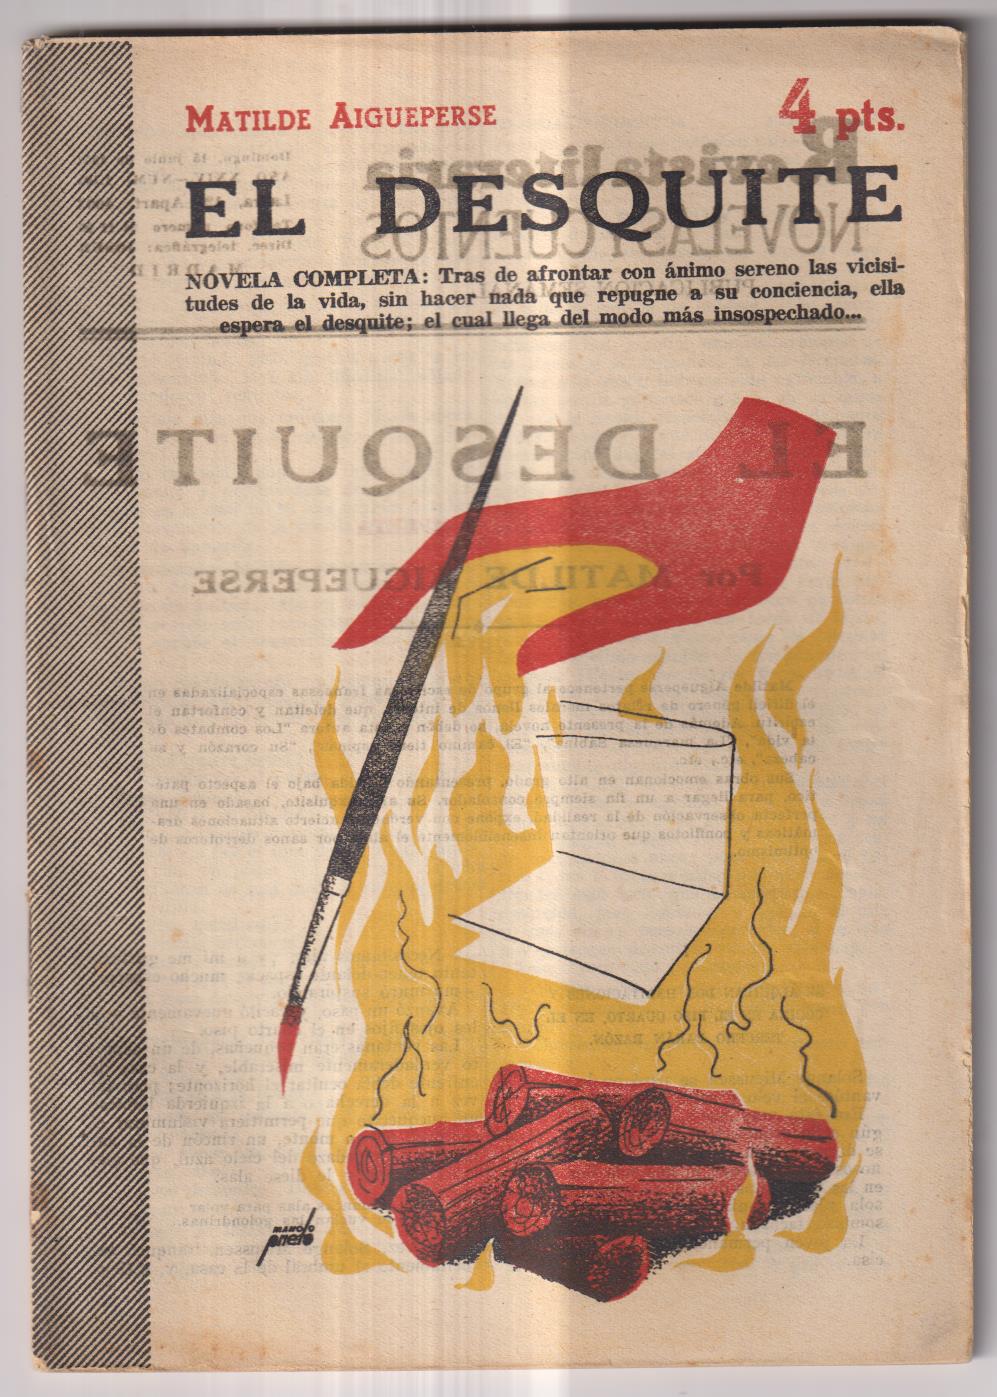 Revista Literaria Novelas y Cuentos nº 1101. Matilde Aigueperse. El Desquite, Año 1952